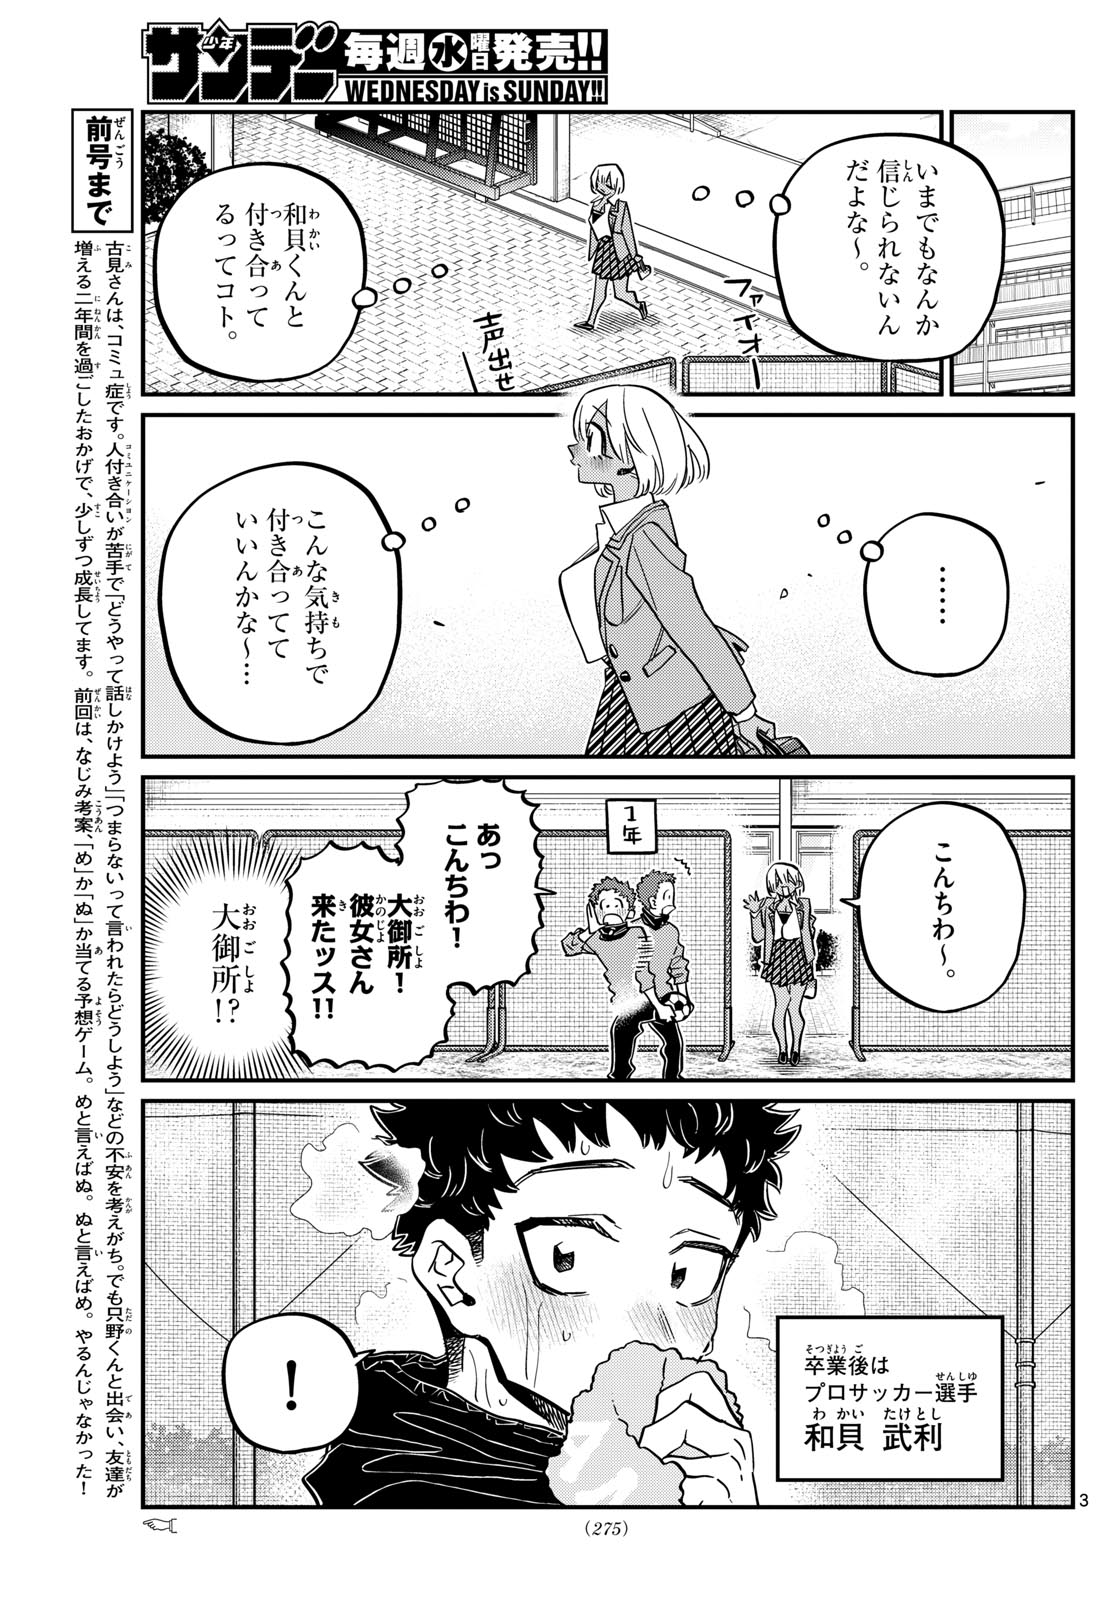 Komi-san wa Komyushou Desu - Chapter 467 - Page 3